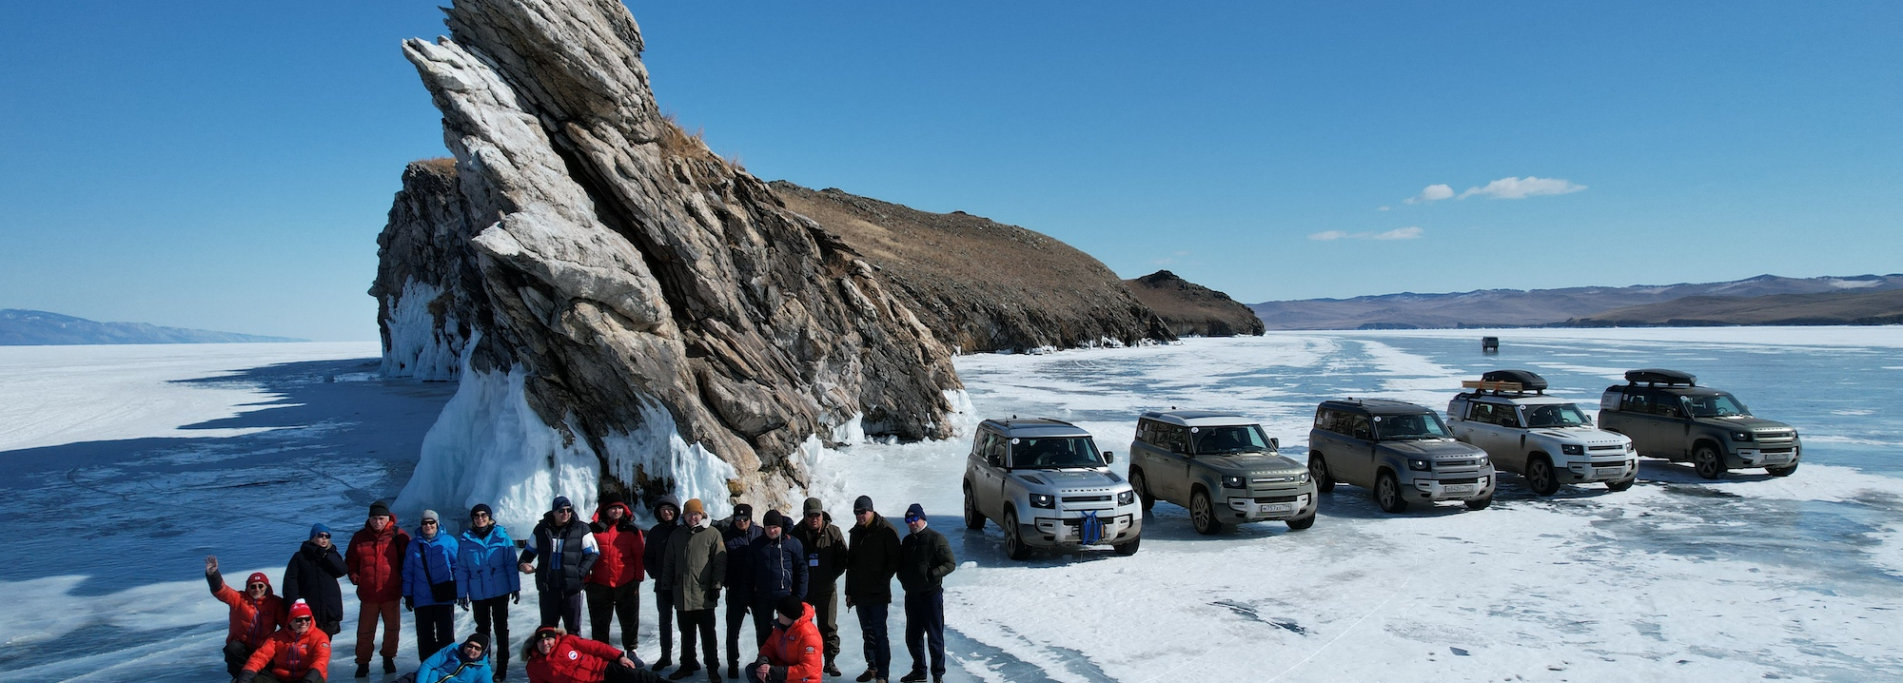 Baikal ice - Incredible winter trip in Russia